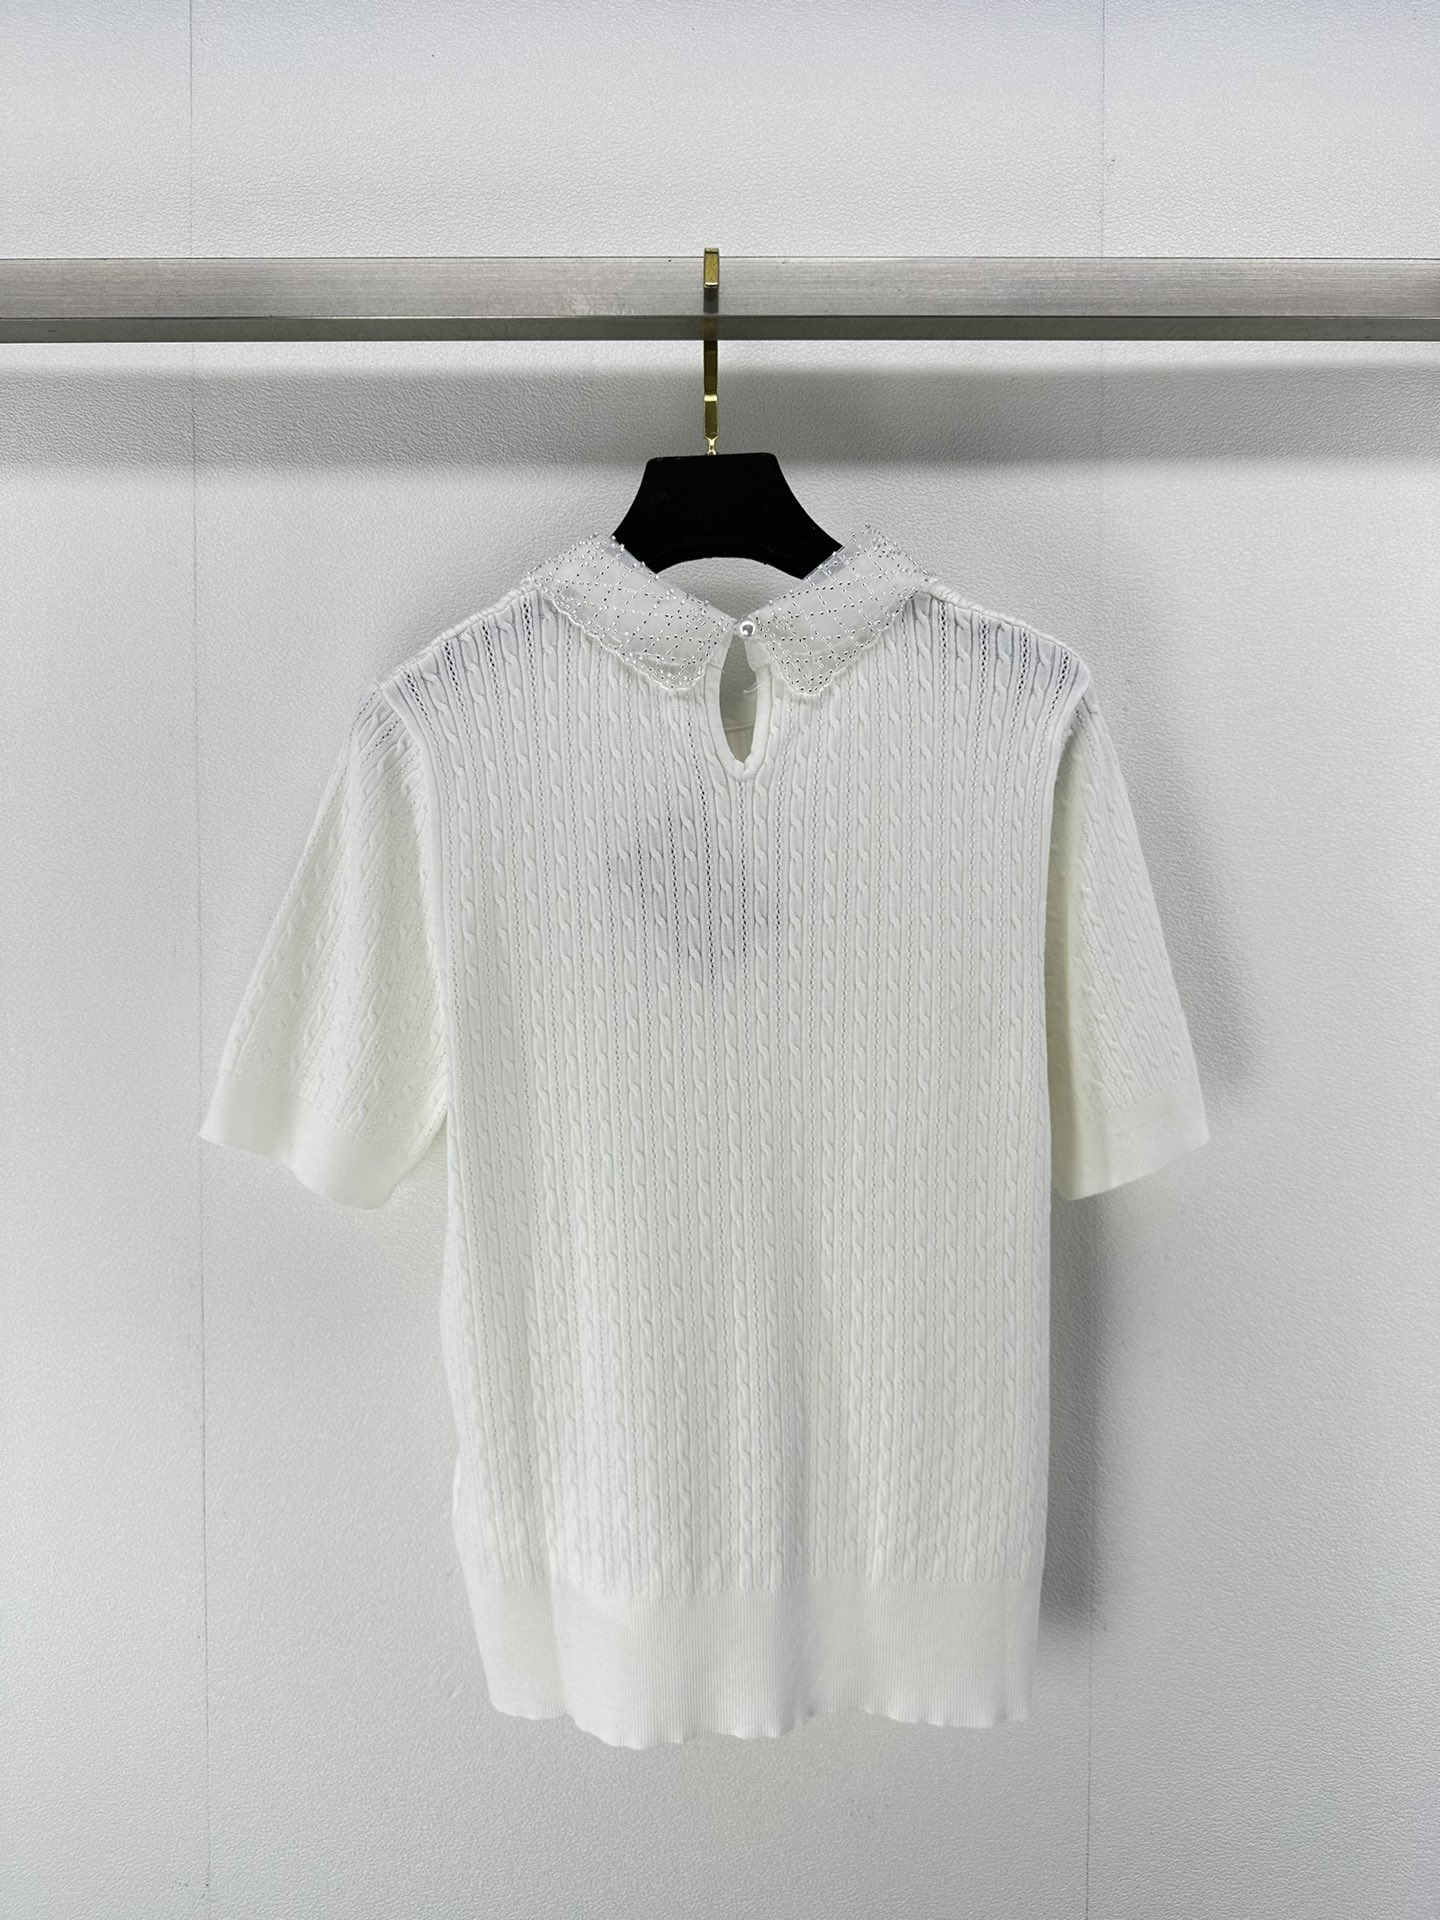 ミュウミュウ ローブルースーパーコピー 短袖 Tシャツ トップス 軽量 薄い シンプル 純綿 HOT品質保証 ホワイト_9